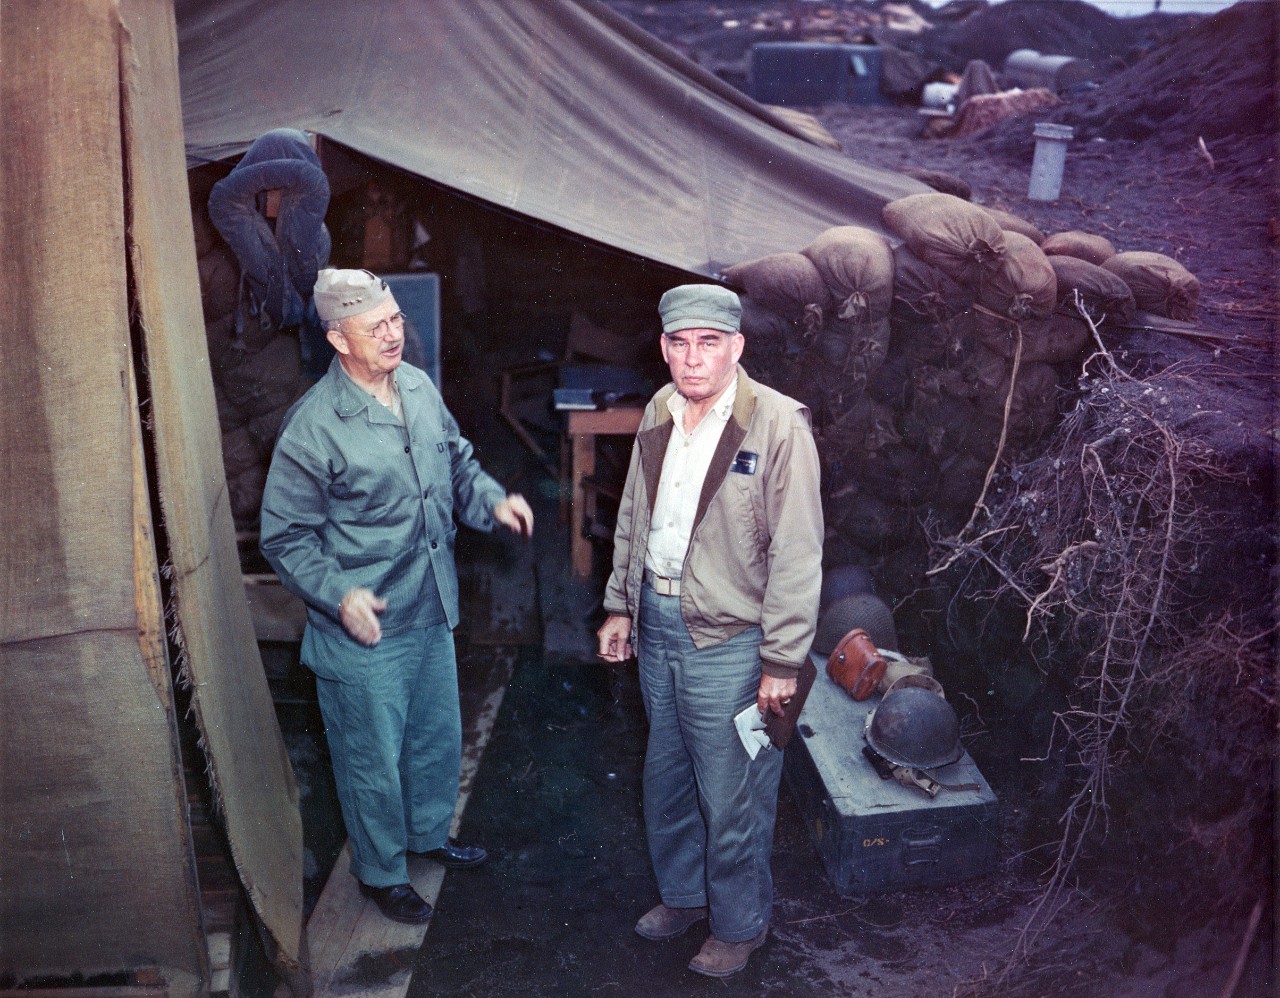 Photo #: USMC 114395 Iwo Jima Campaign, 10 March 1945